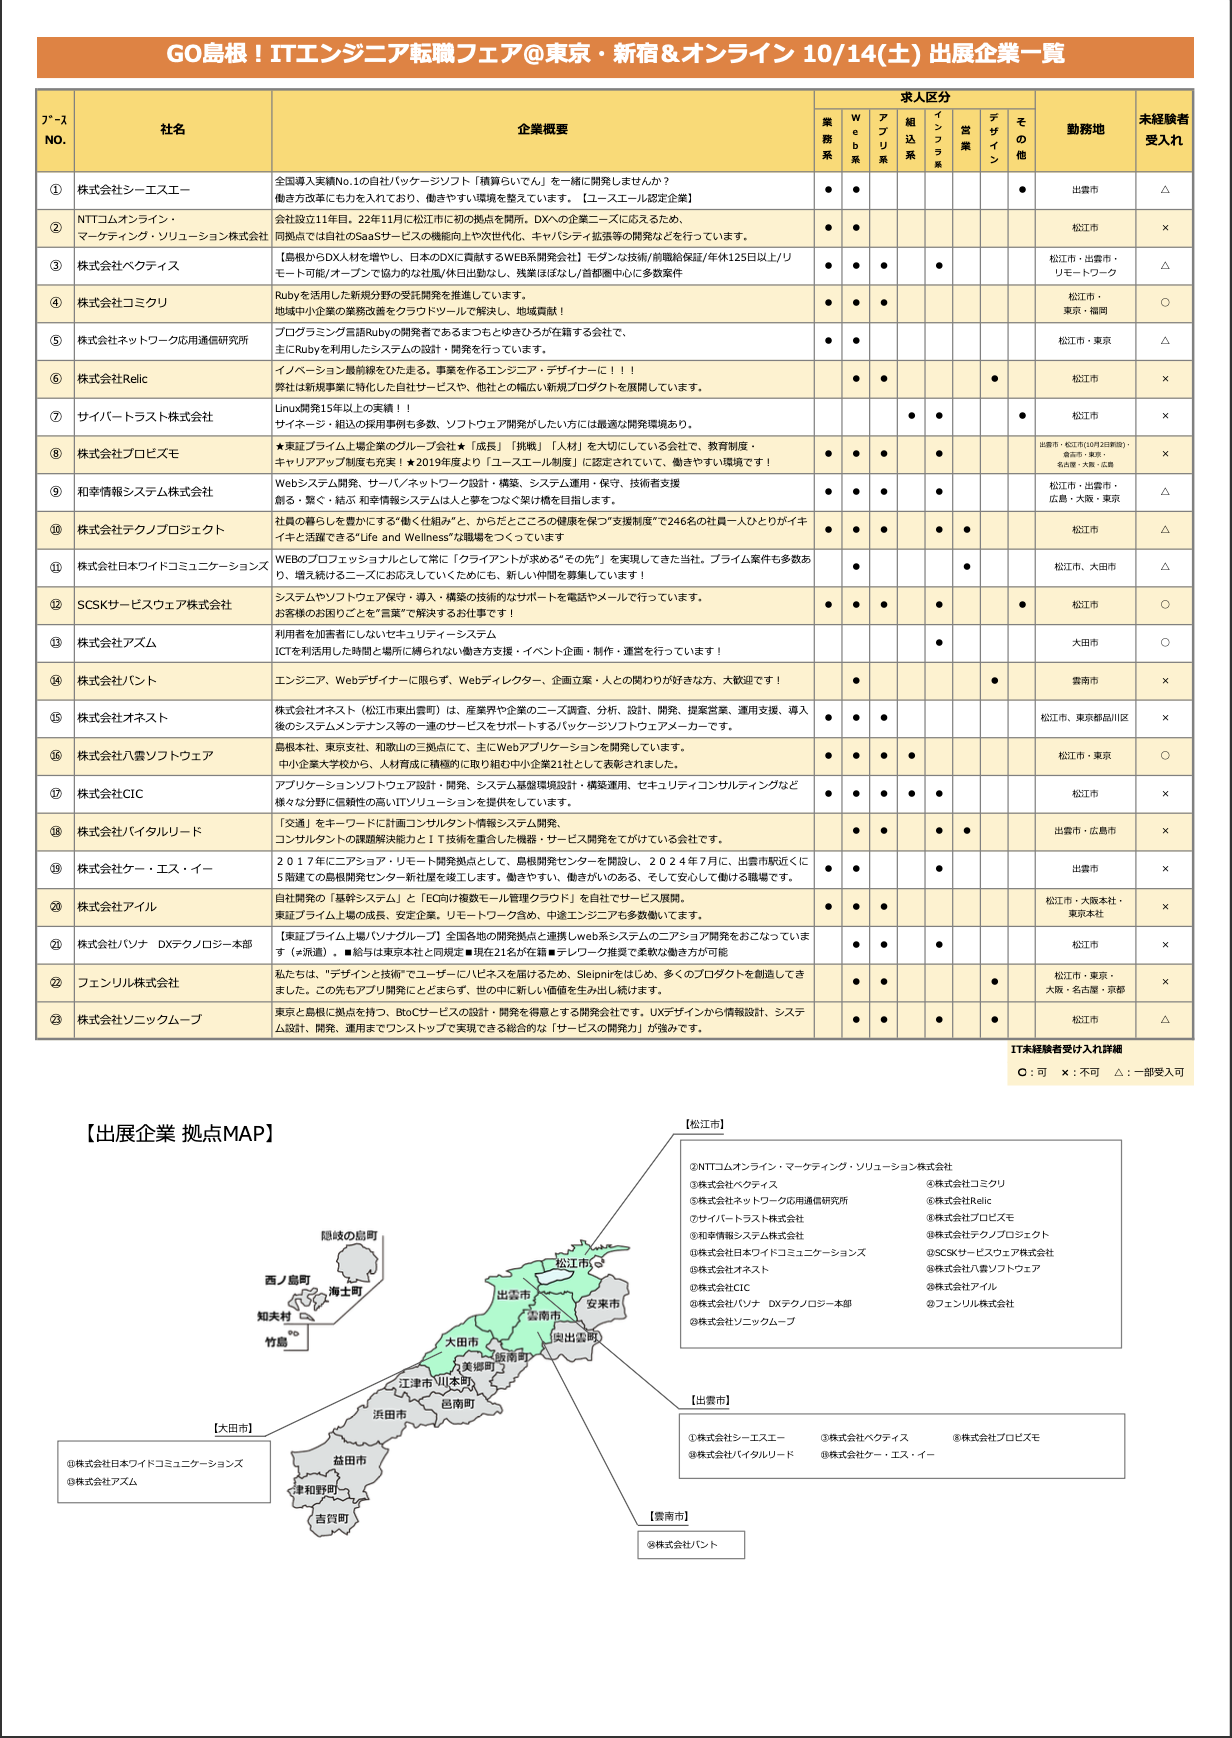 参加企業の島根県内分布マップ